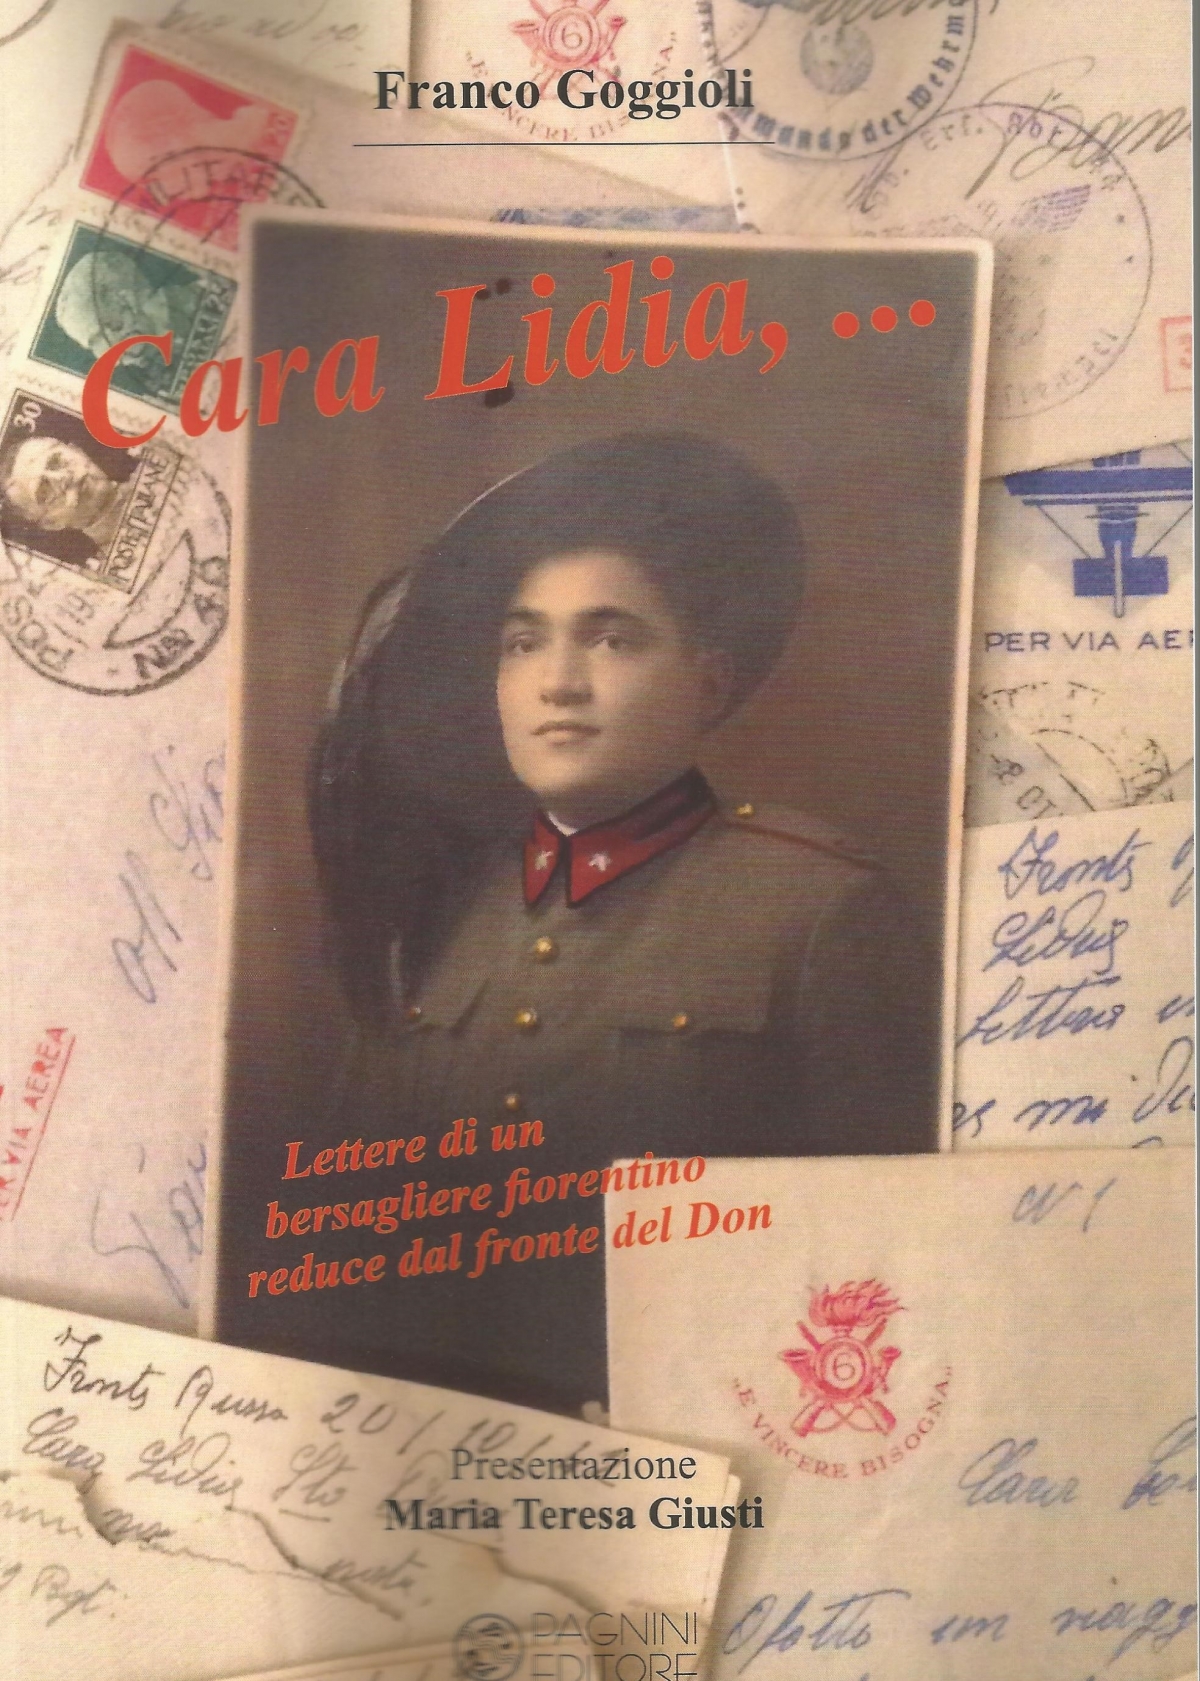 Cara Lidia... Lettere di un bersagliere fiorentino reduce dal fronte del Don